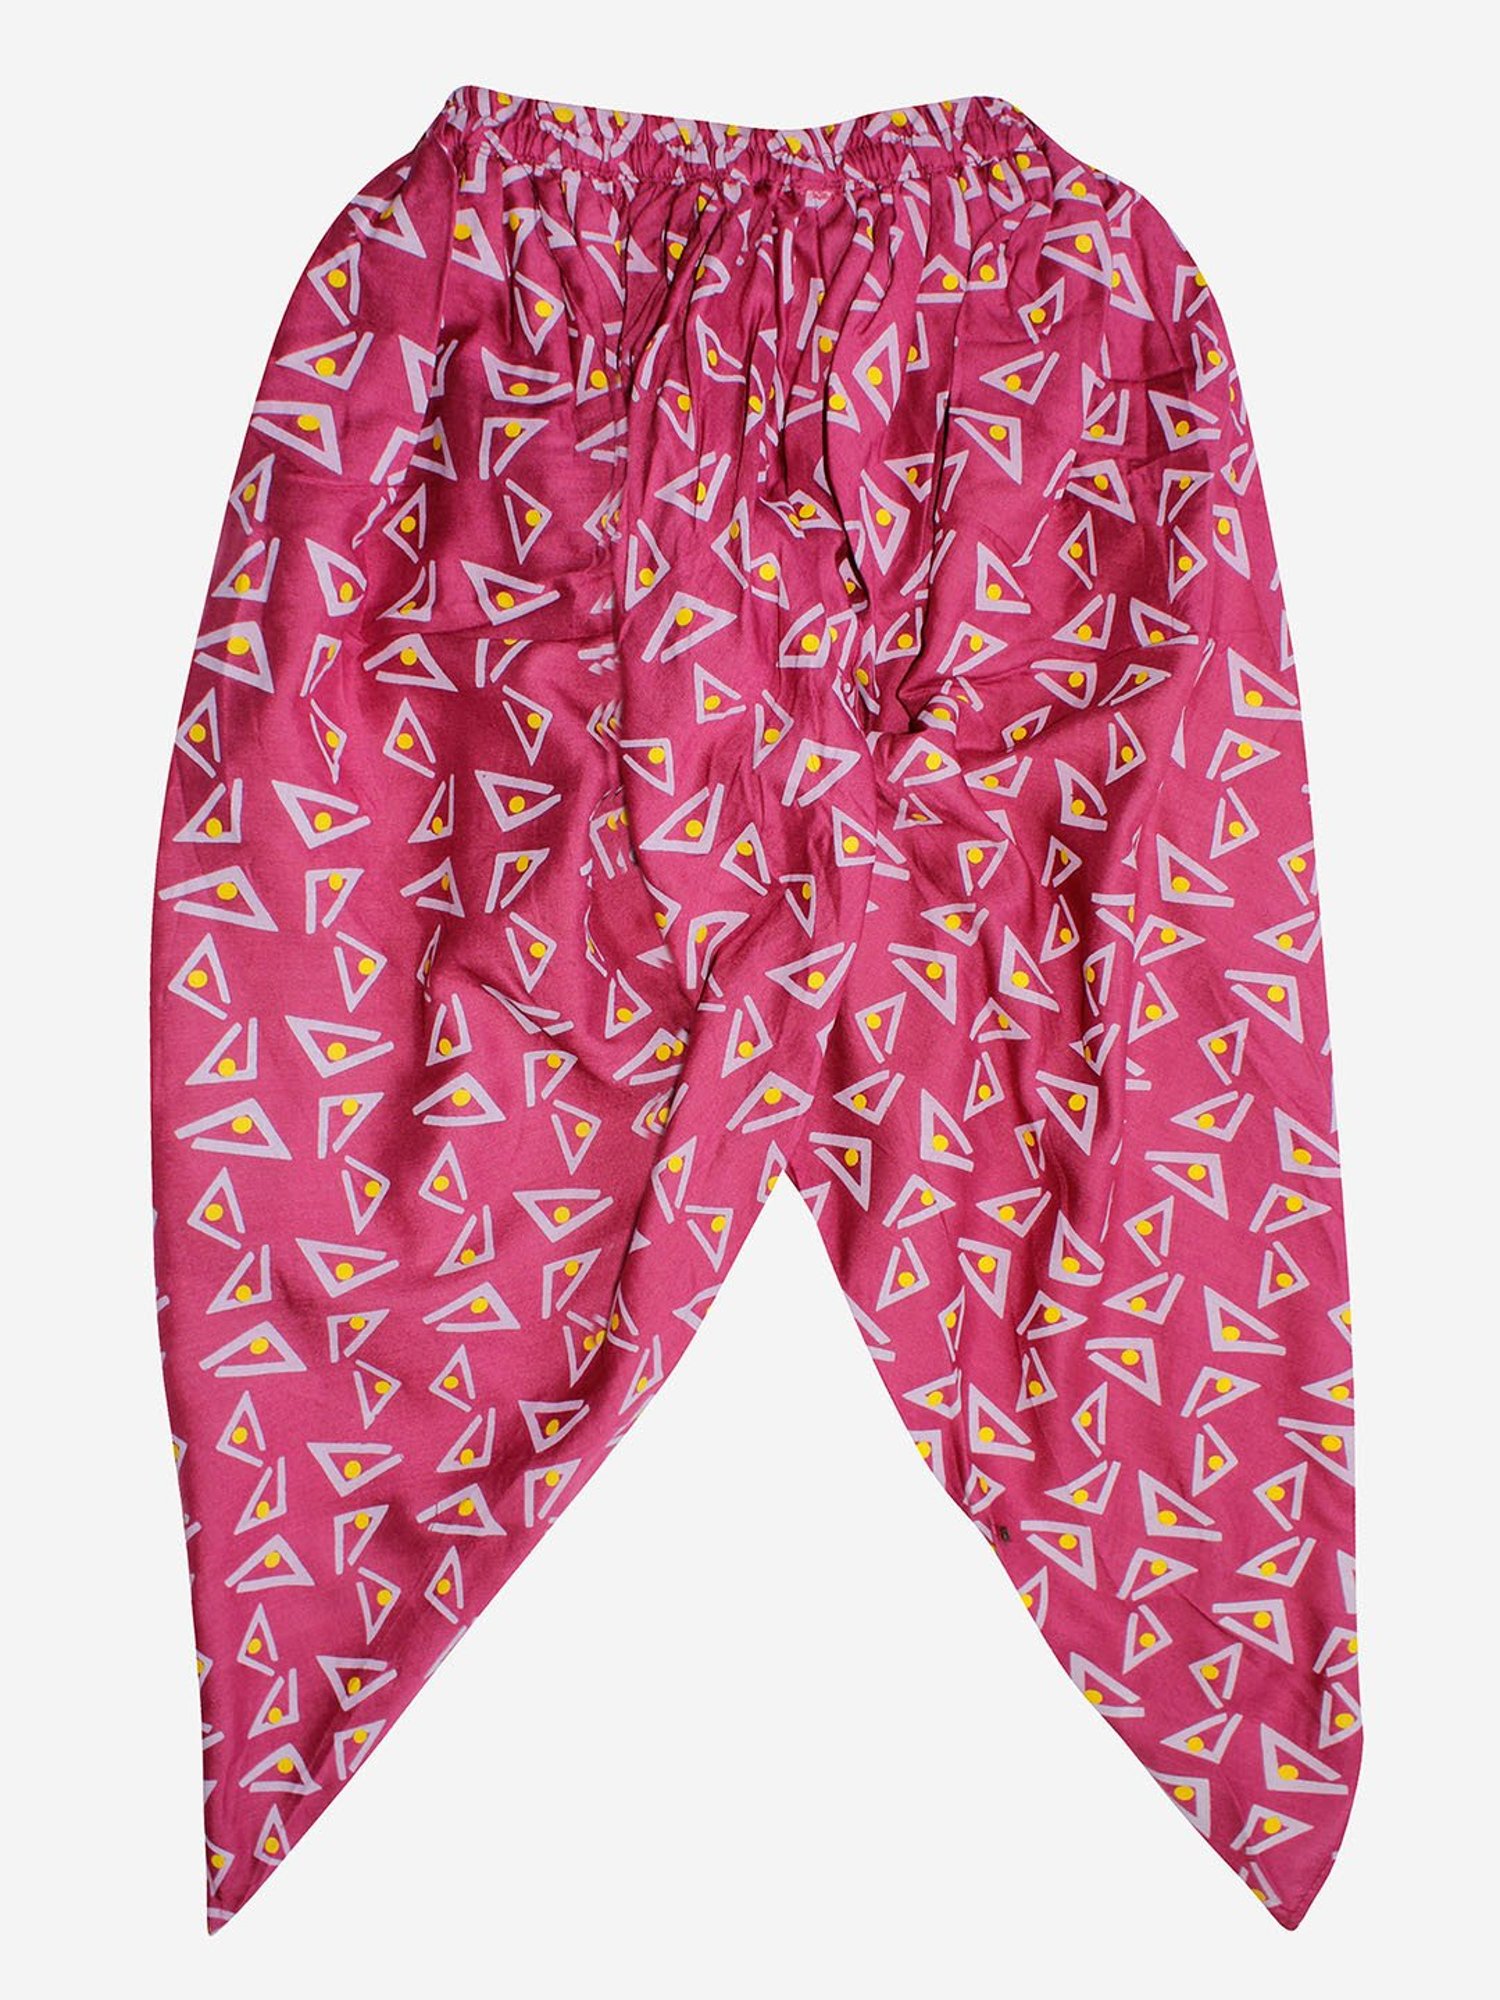 HIPPIE HAREM PANTS Women & Men Bohemian Clothing Harem Trouser for Girls  Festival Pants Yoga Girl Gift Organic Trouser - Etsy